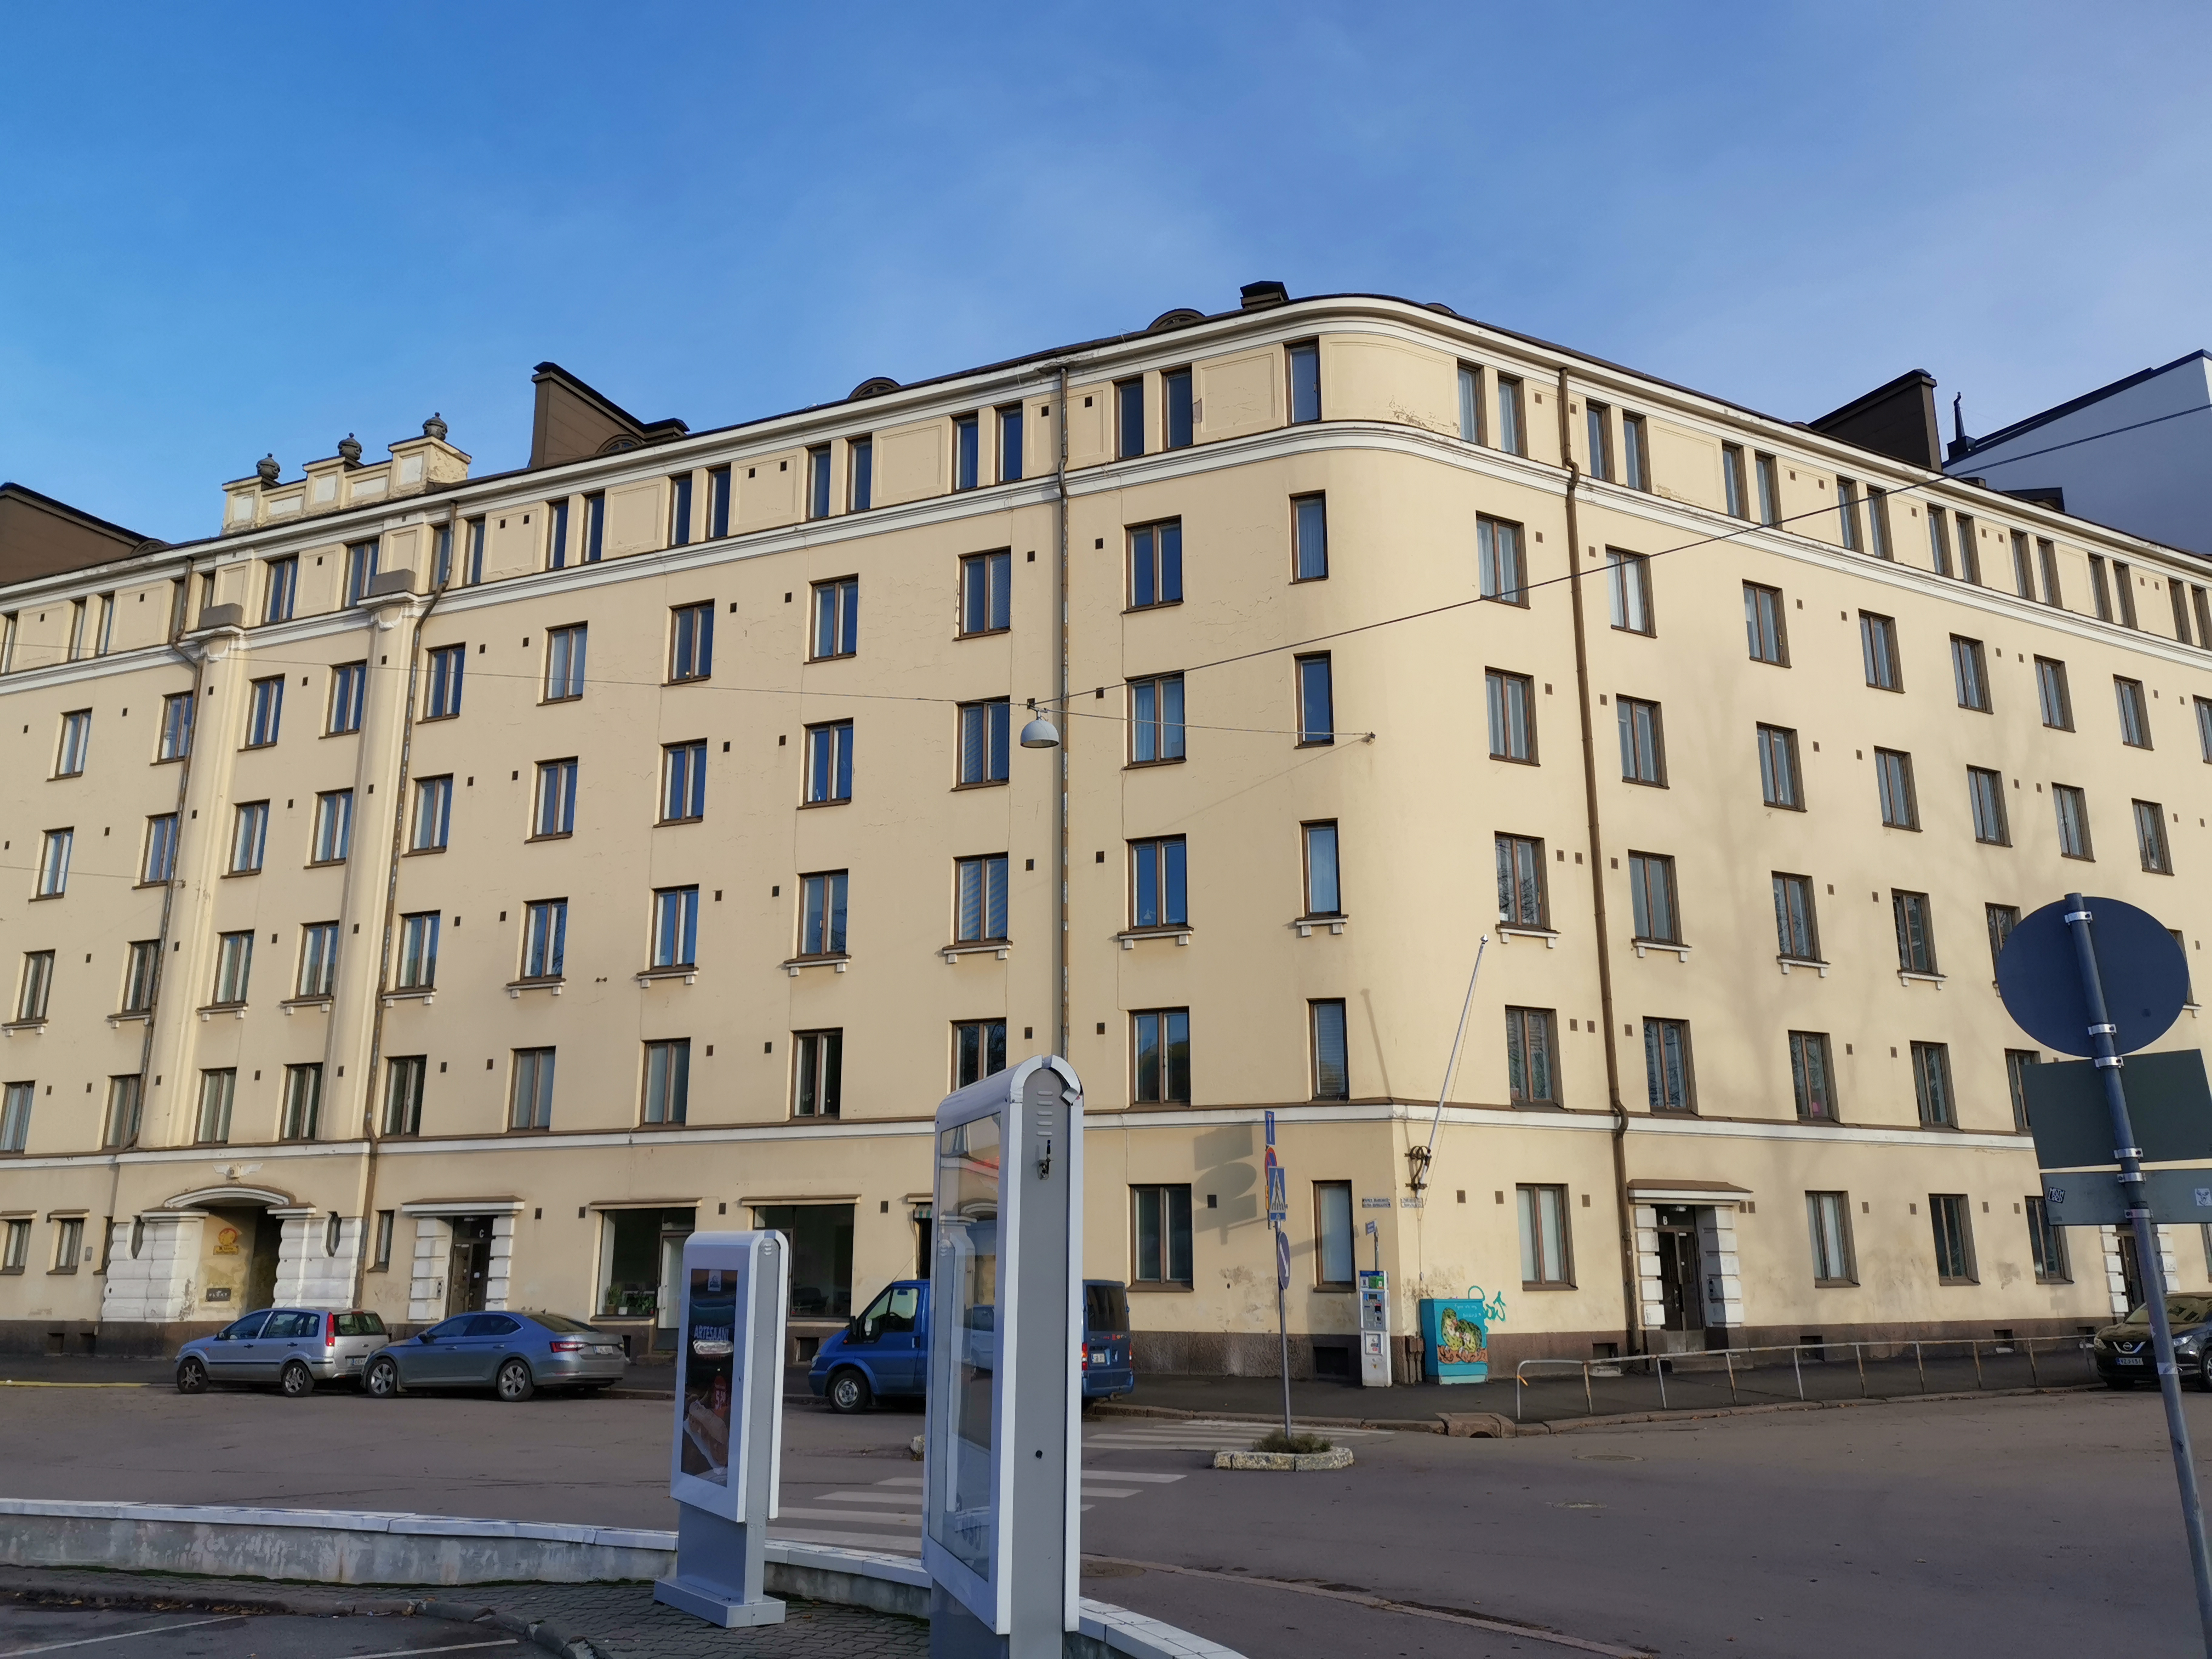 Asunto Oy Brahen taloa rakennetaan, Itäinen Brahenkatu 11. - Porvoonkatu 11 - 13. rephoto